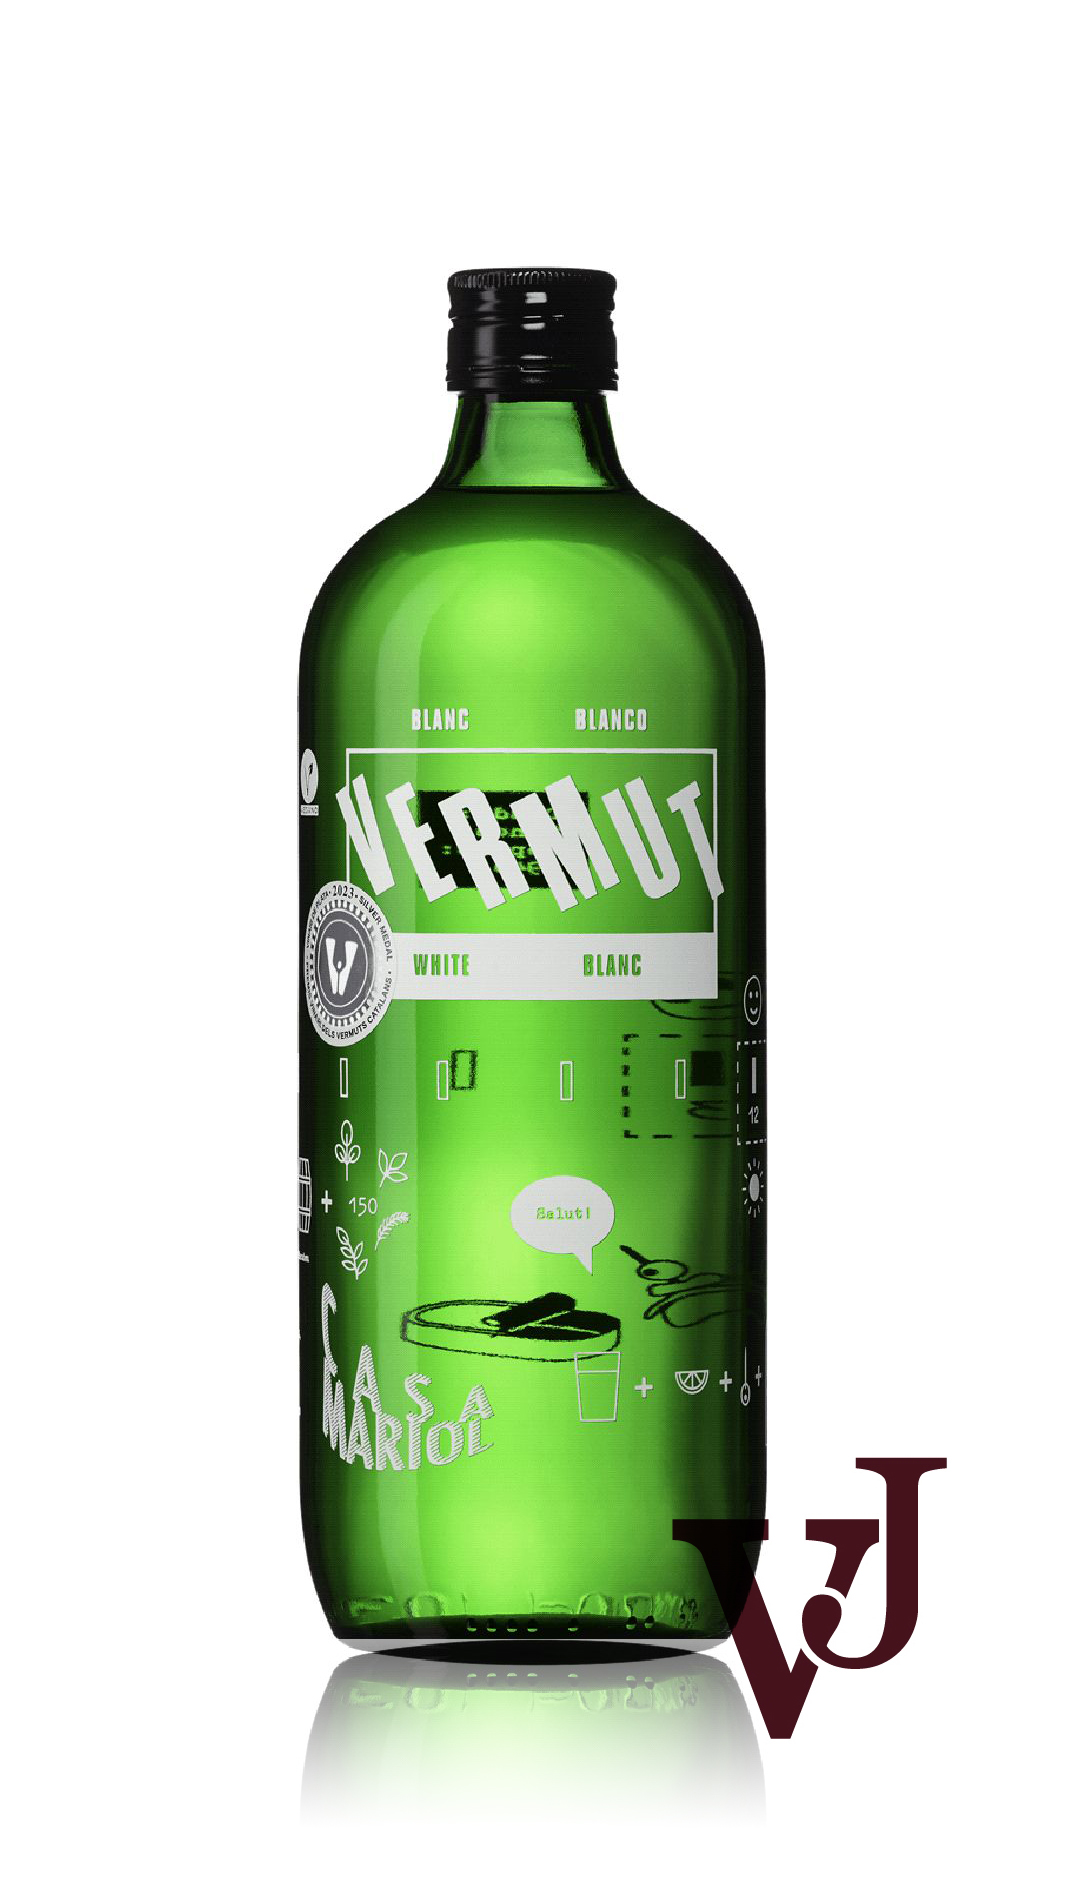 Vitt Vin - Casa Mariol Vermut Blanc artikel nummer 5866101 från producenten Casa Mariol från Spanien